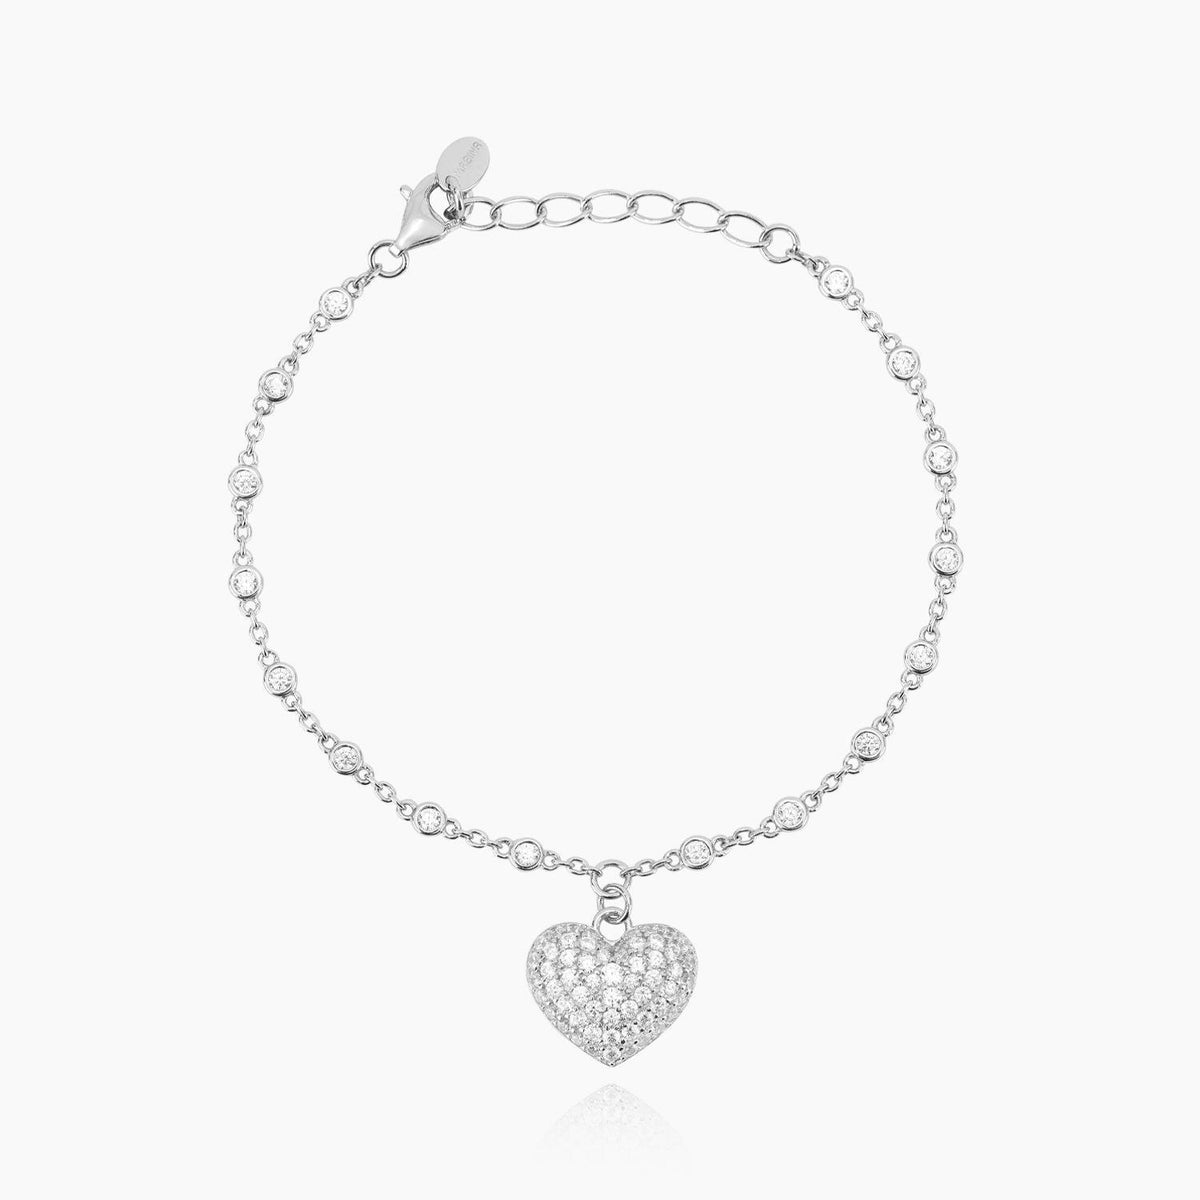 Groumette Bracelet in Silver Heart Mabina Gioielli 533467 